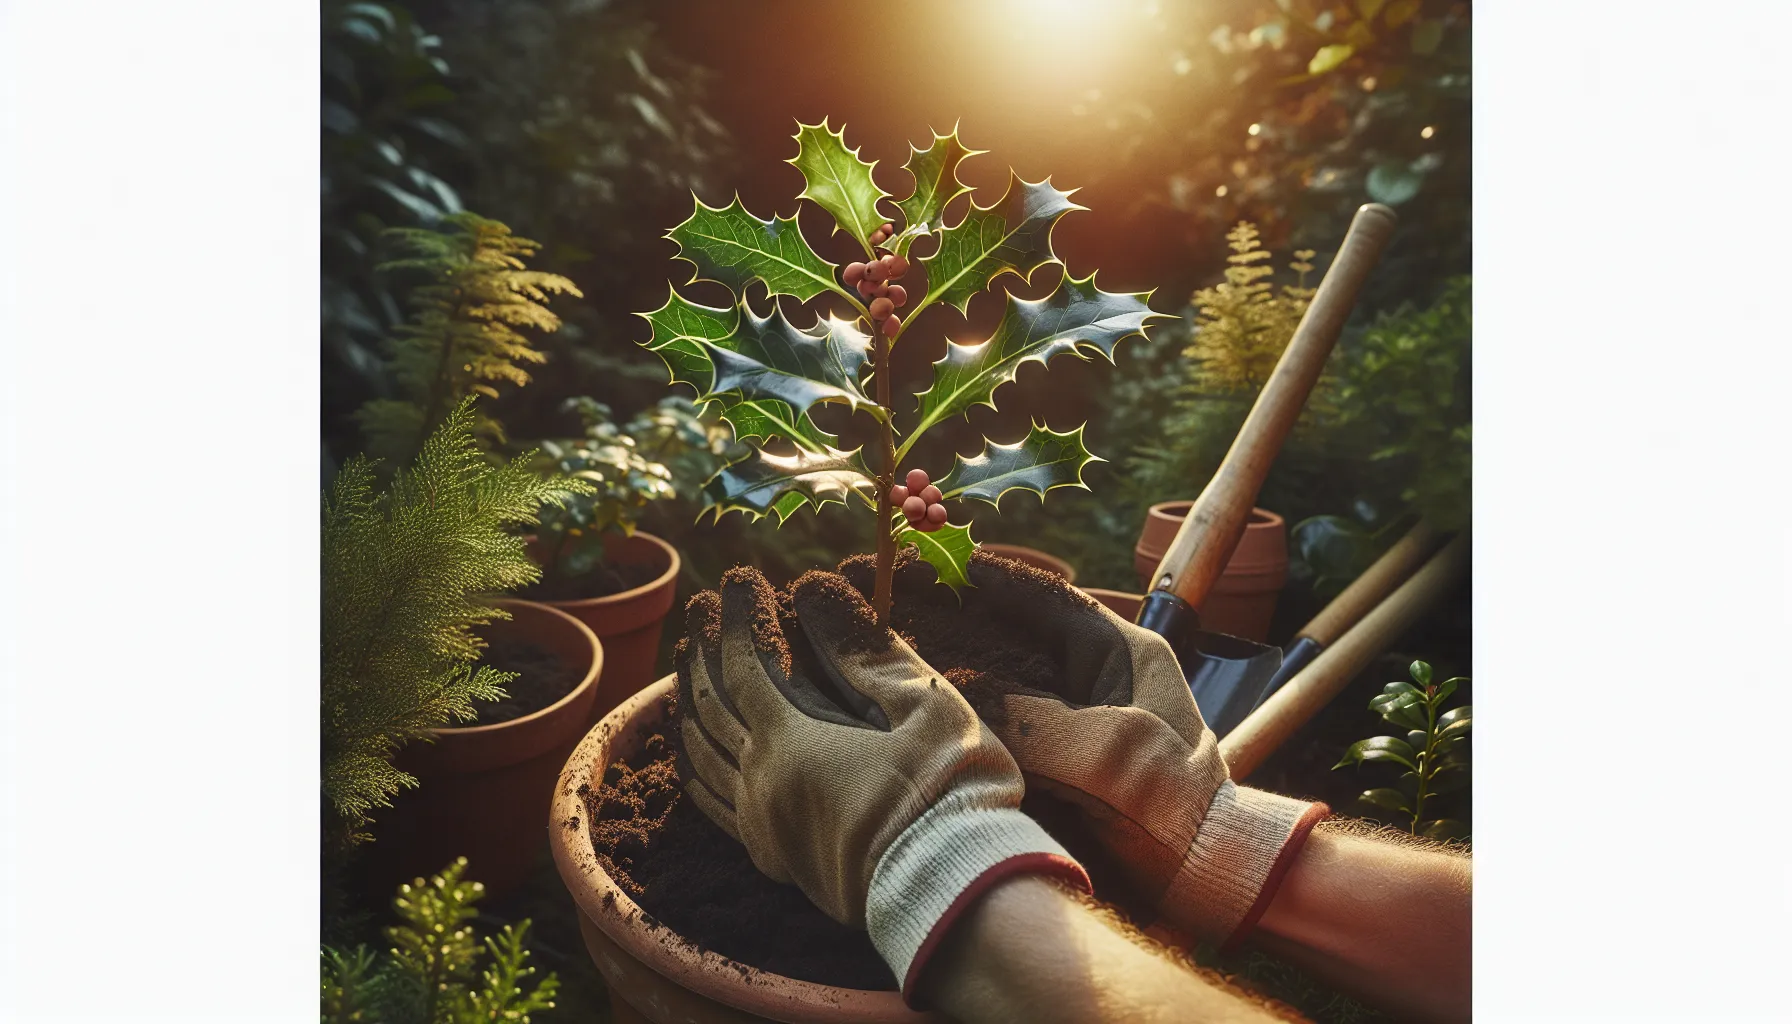 Imagen de manos trasplantando un acebo en una maceta en un jardín soleado y armonioso.